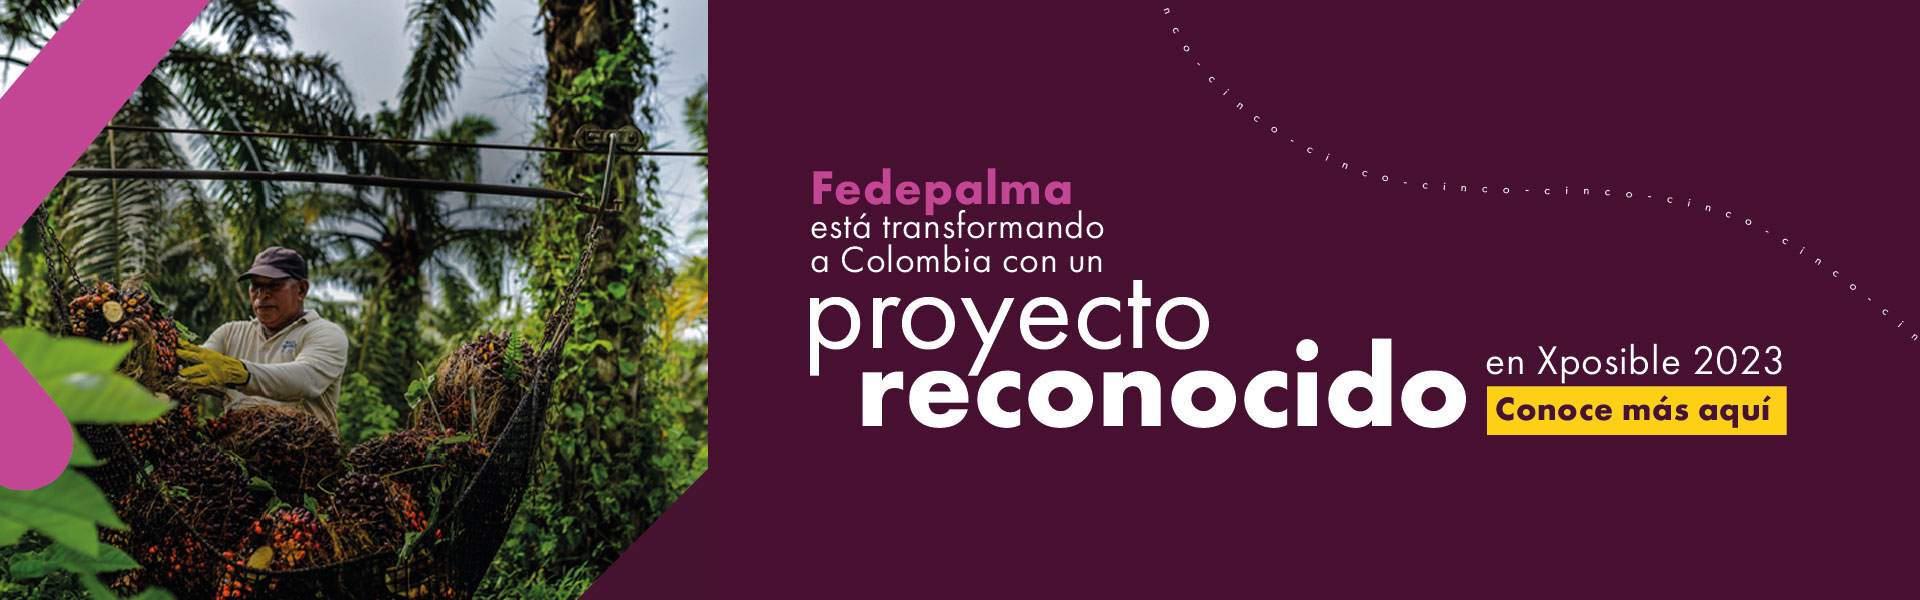 Proyecto Fedepalma, reconocido por Xposible